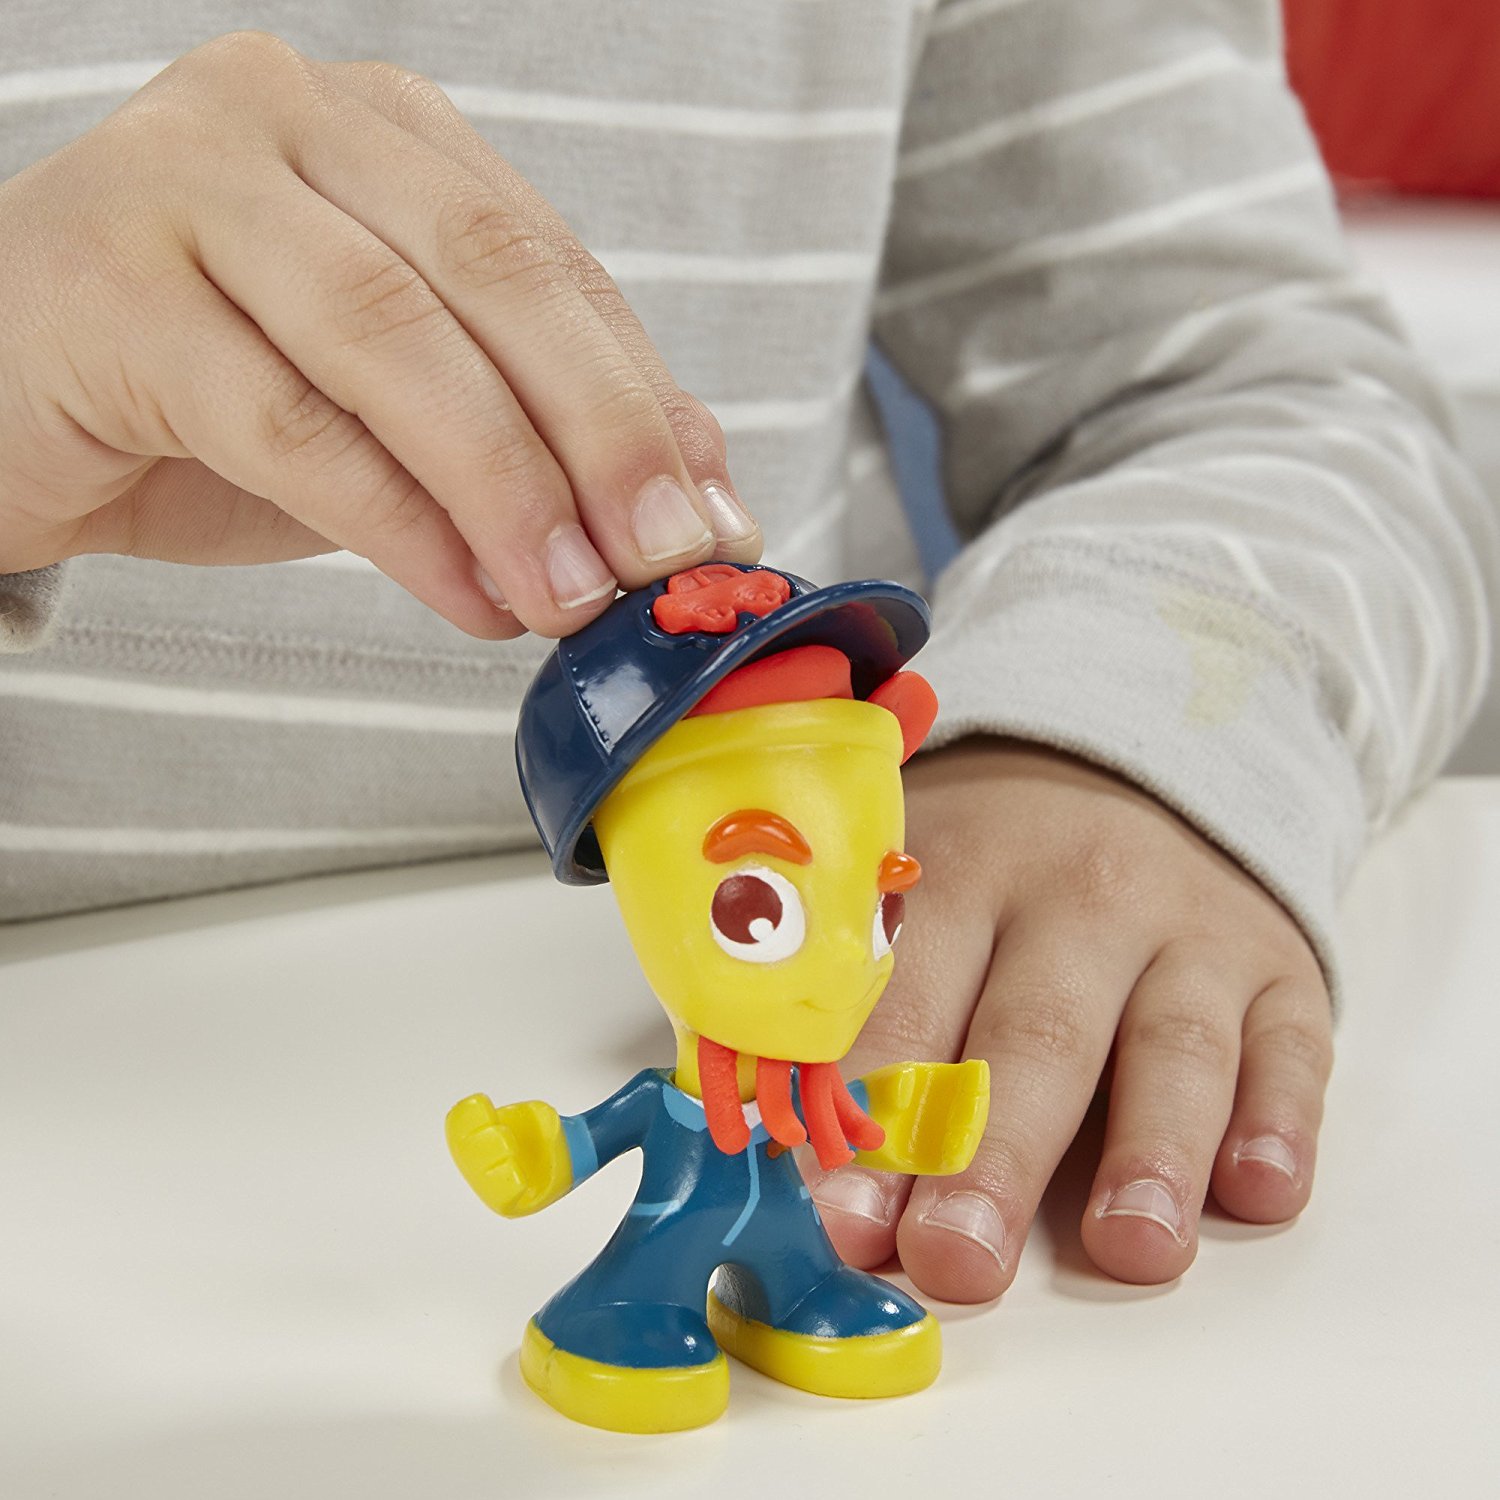 Набор Play-Doh - Город главная улица + фигурки  